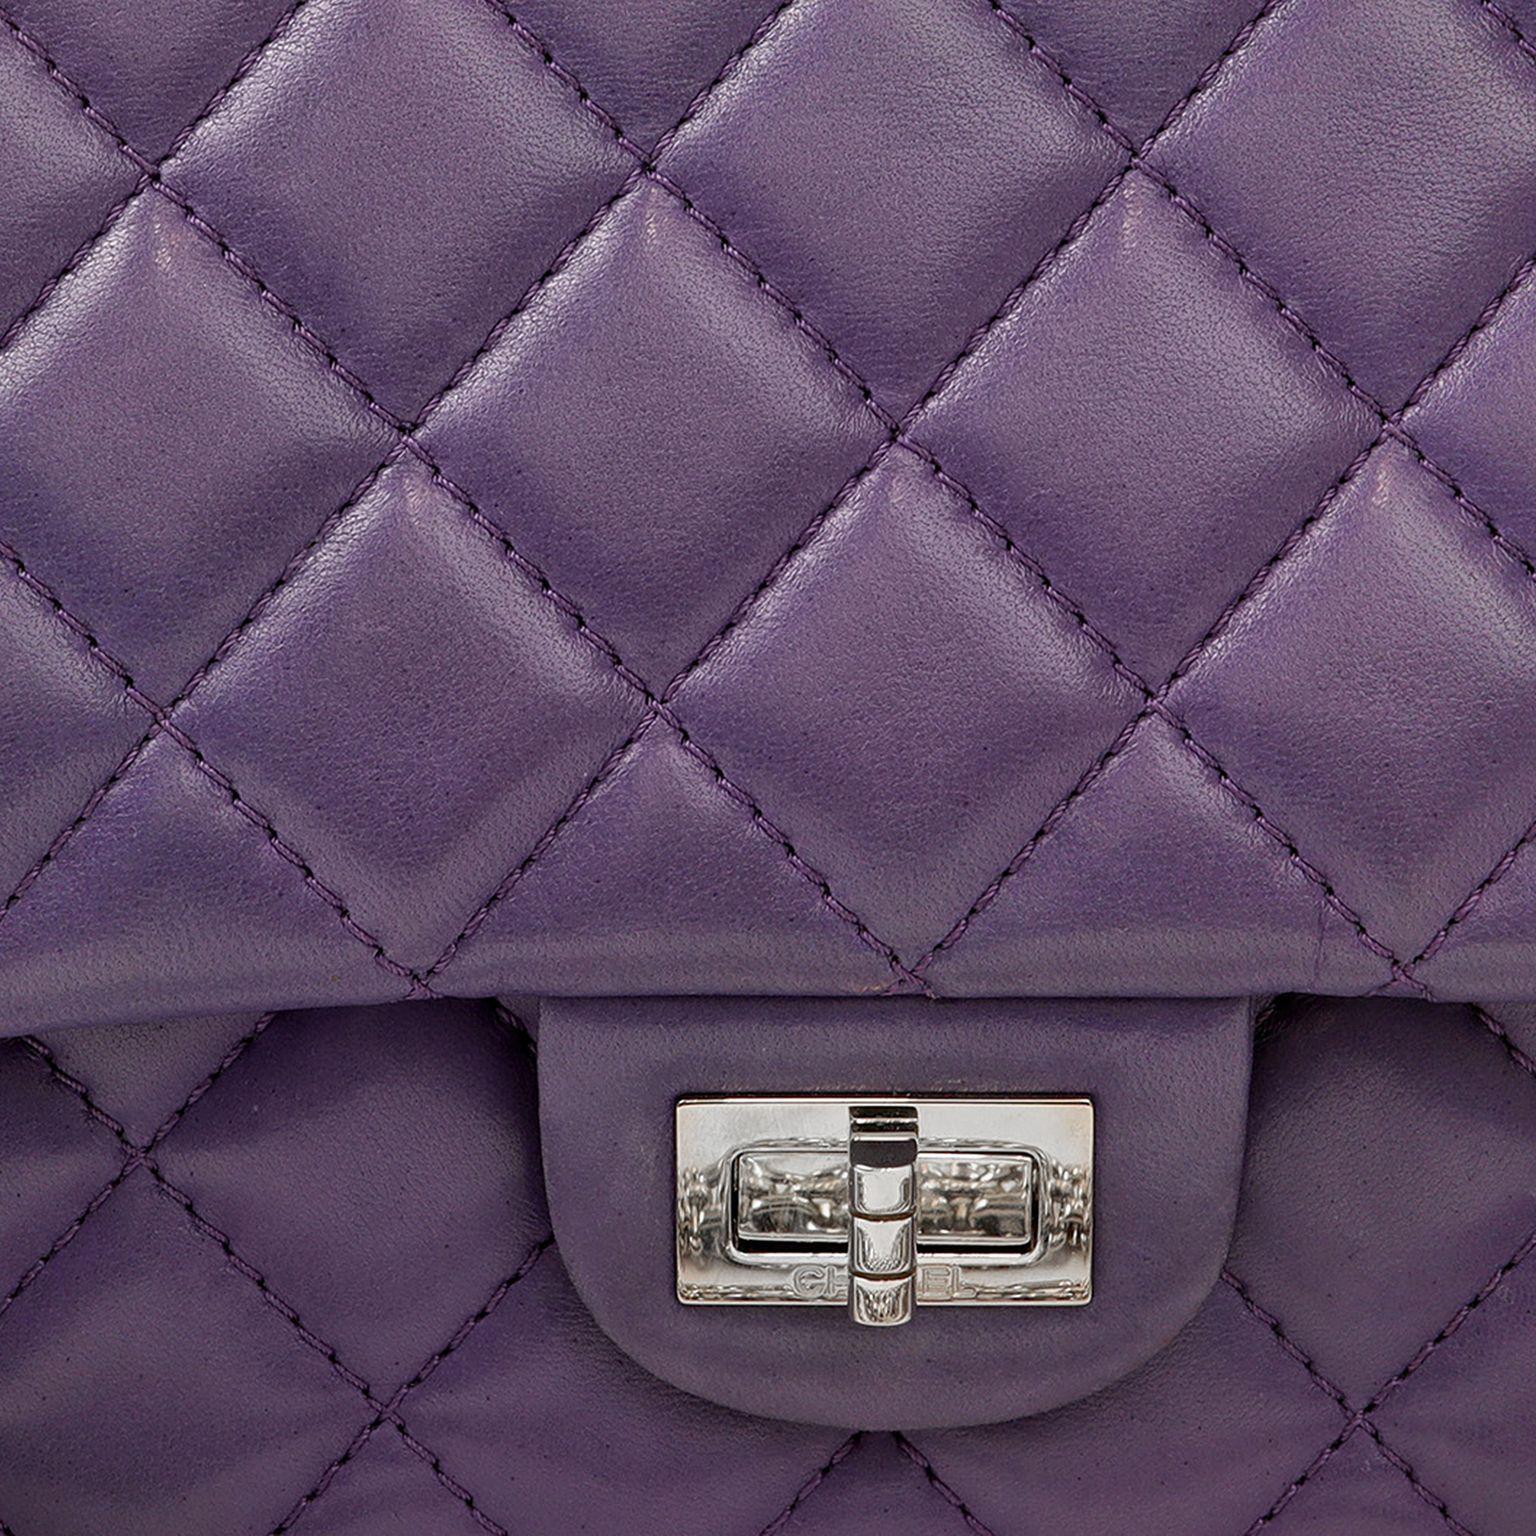 Cet authentique Chanel Purple Lambskin 2.55 Medium Classic Flap est parfaitement intact.  Le cuir d'agneau violet foncé est matelassé du motif diamant signature de Chanel.  Cadenas mademoiselle argenté avec chaîne Bijoux.  Sac à poussière inclus.